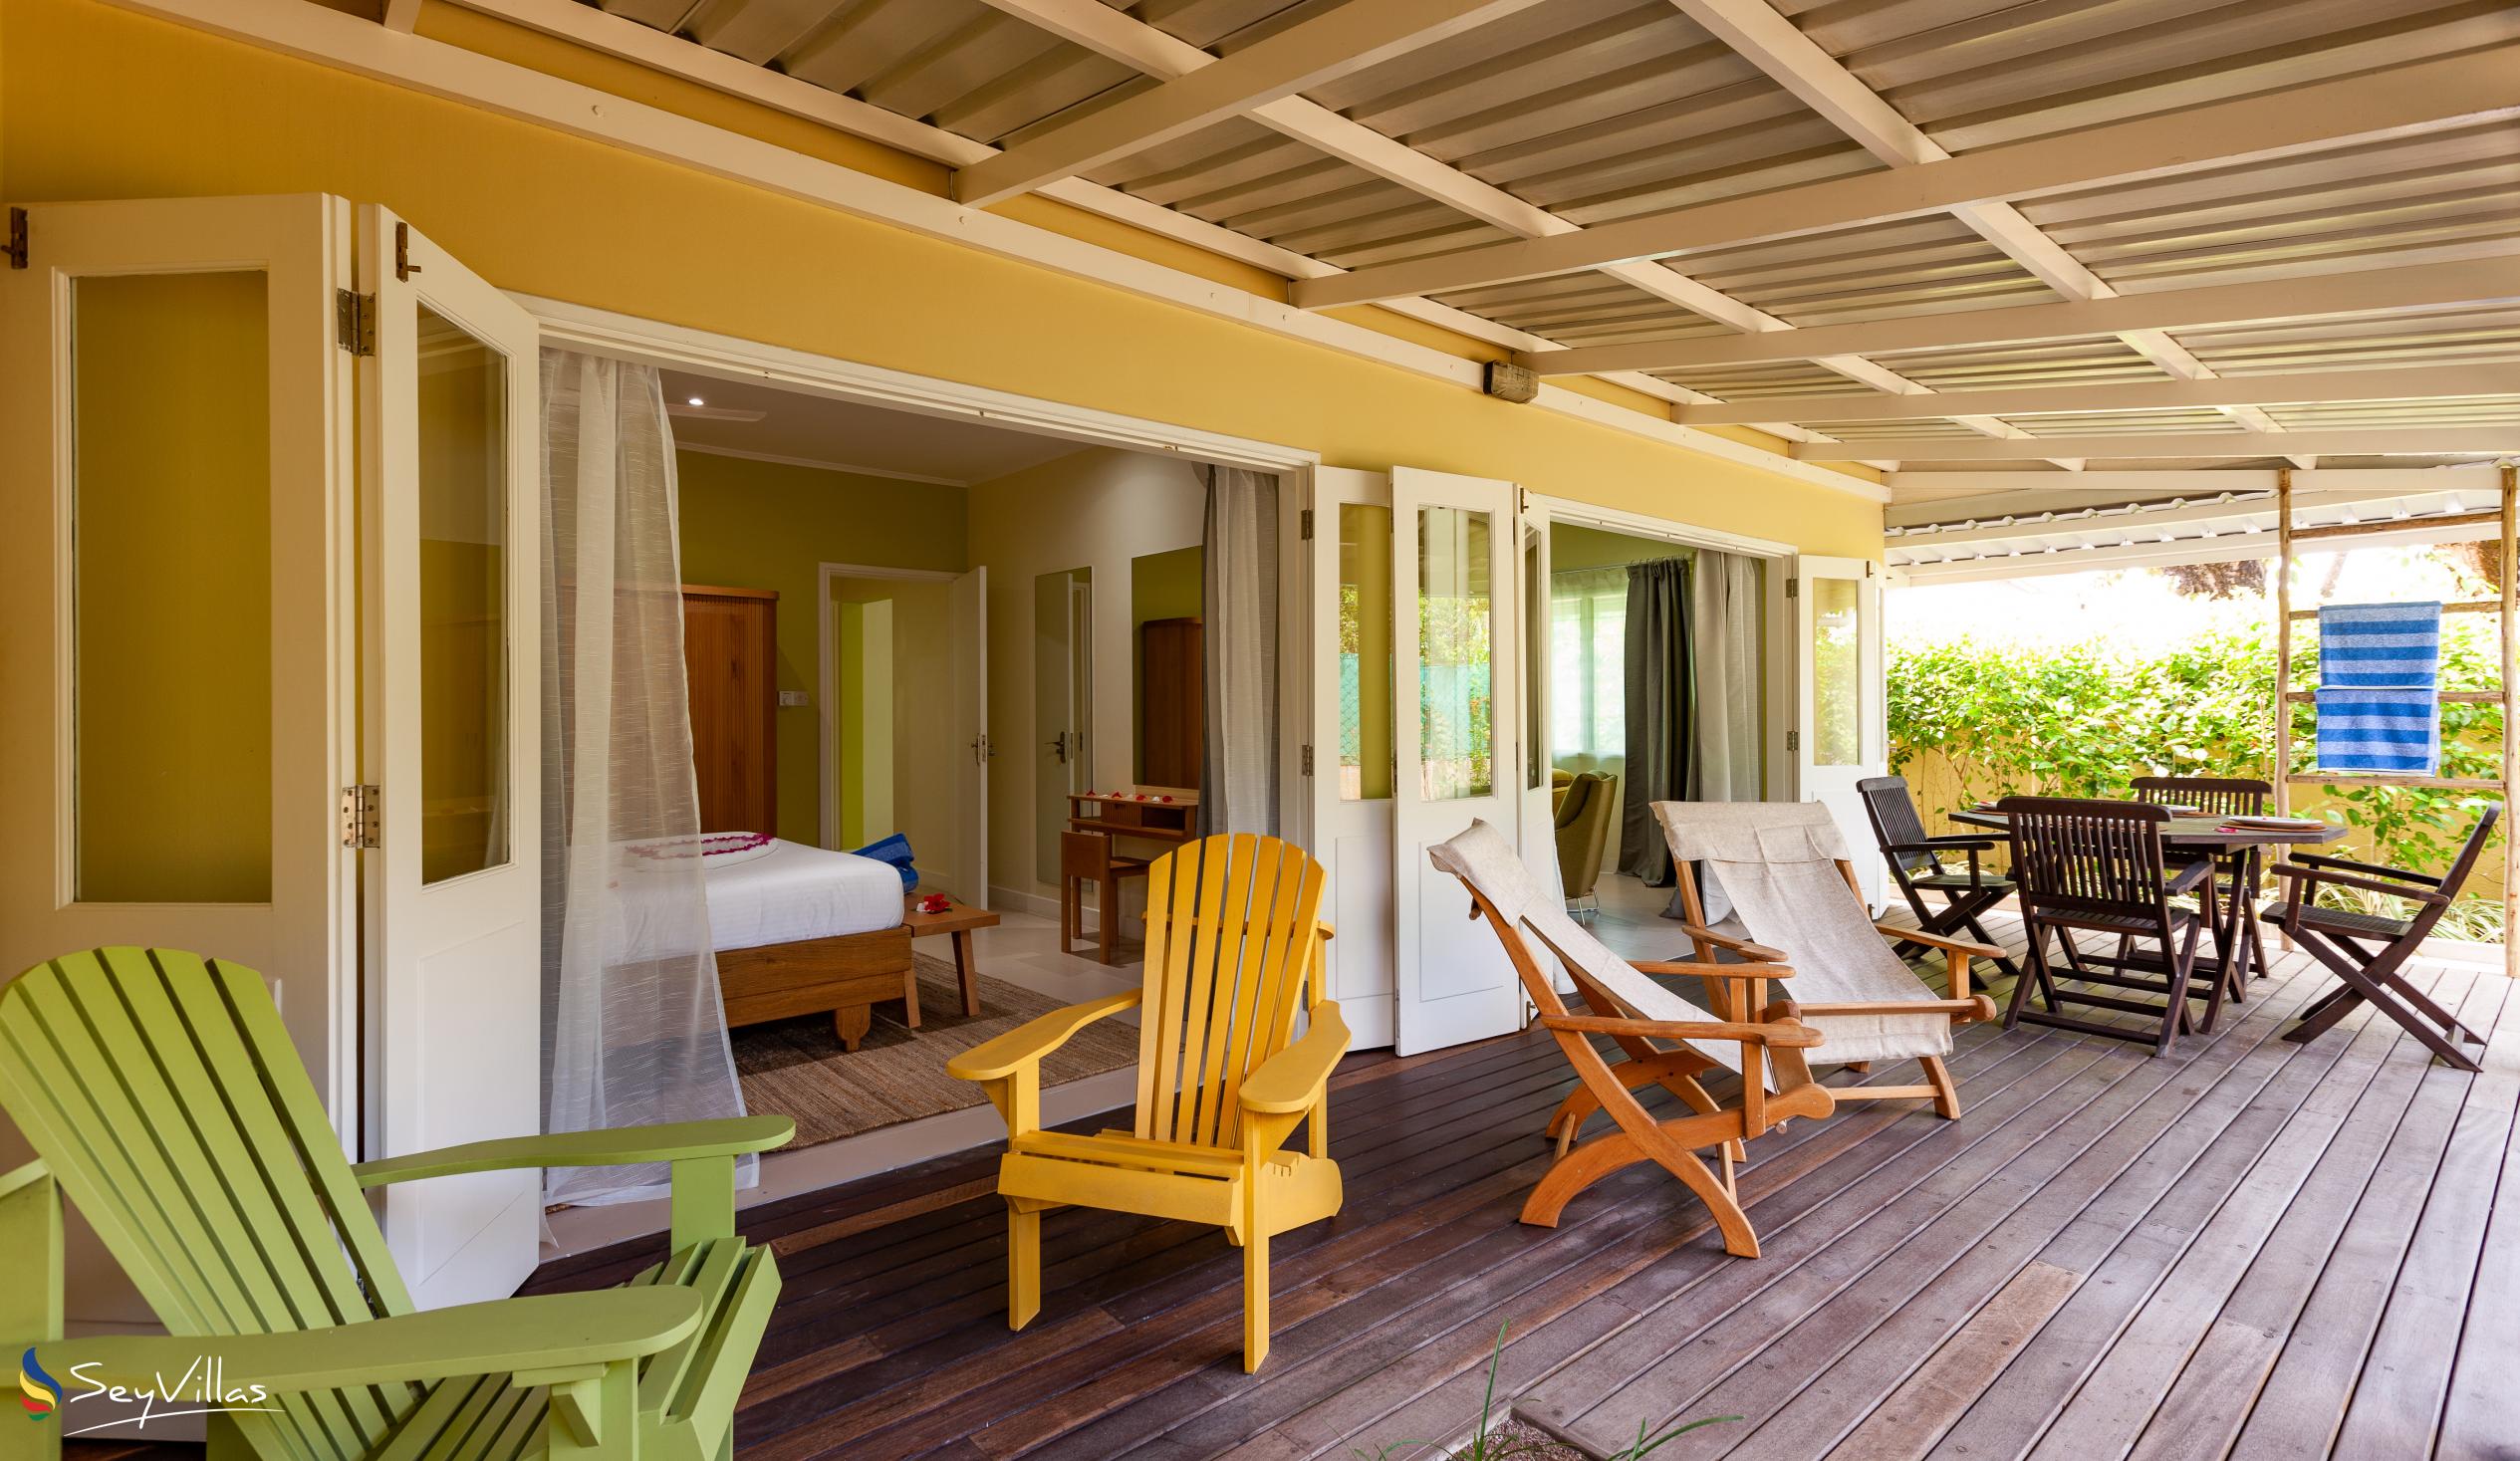 Foto 45: Residence Praslinoise - Familienappartement mit 2 Schlafzimmern (EG) - Praslin (Seychellen)